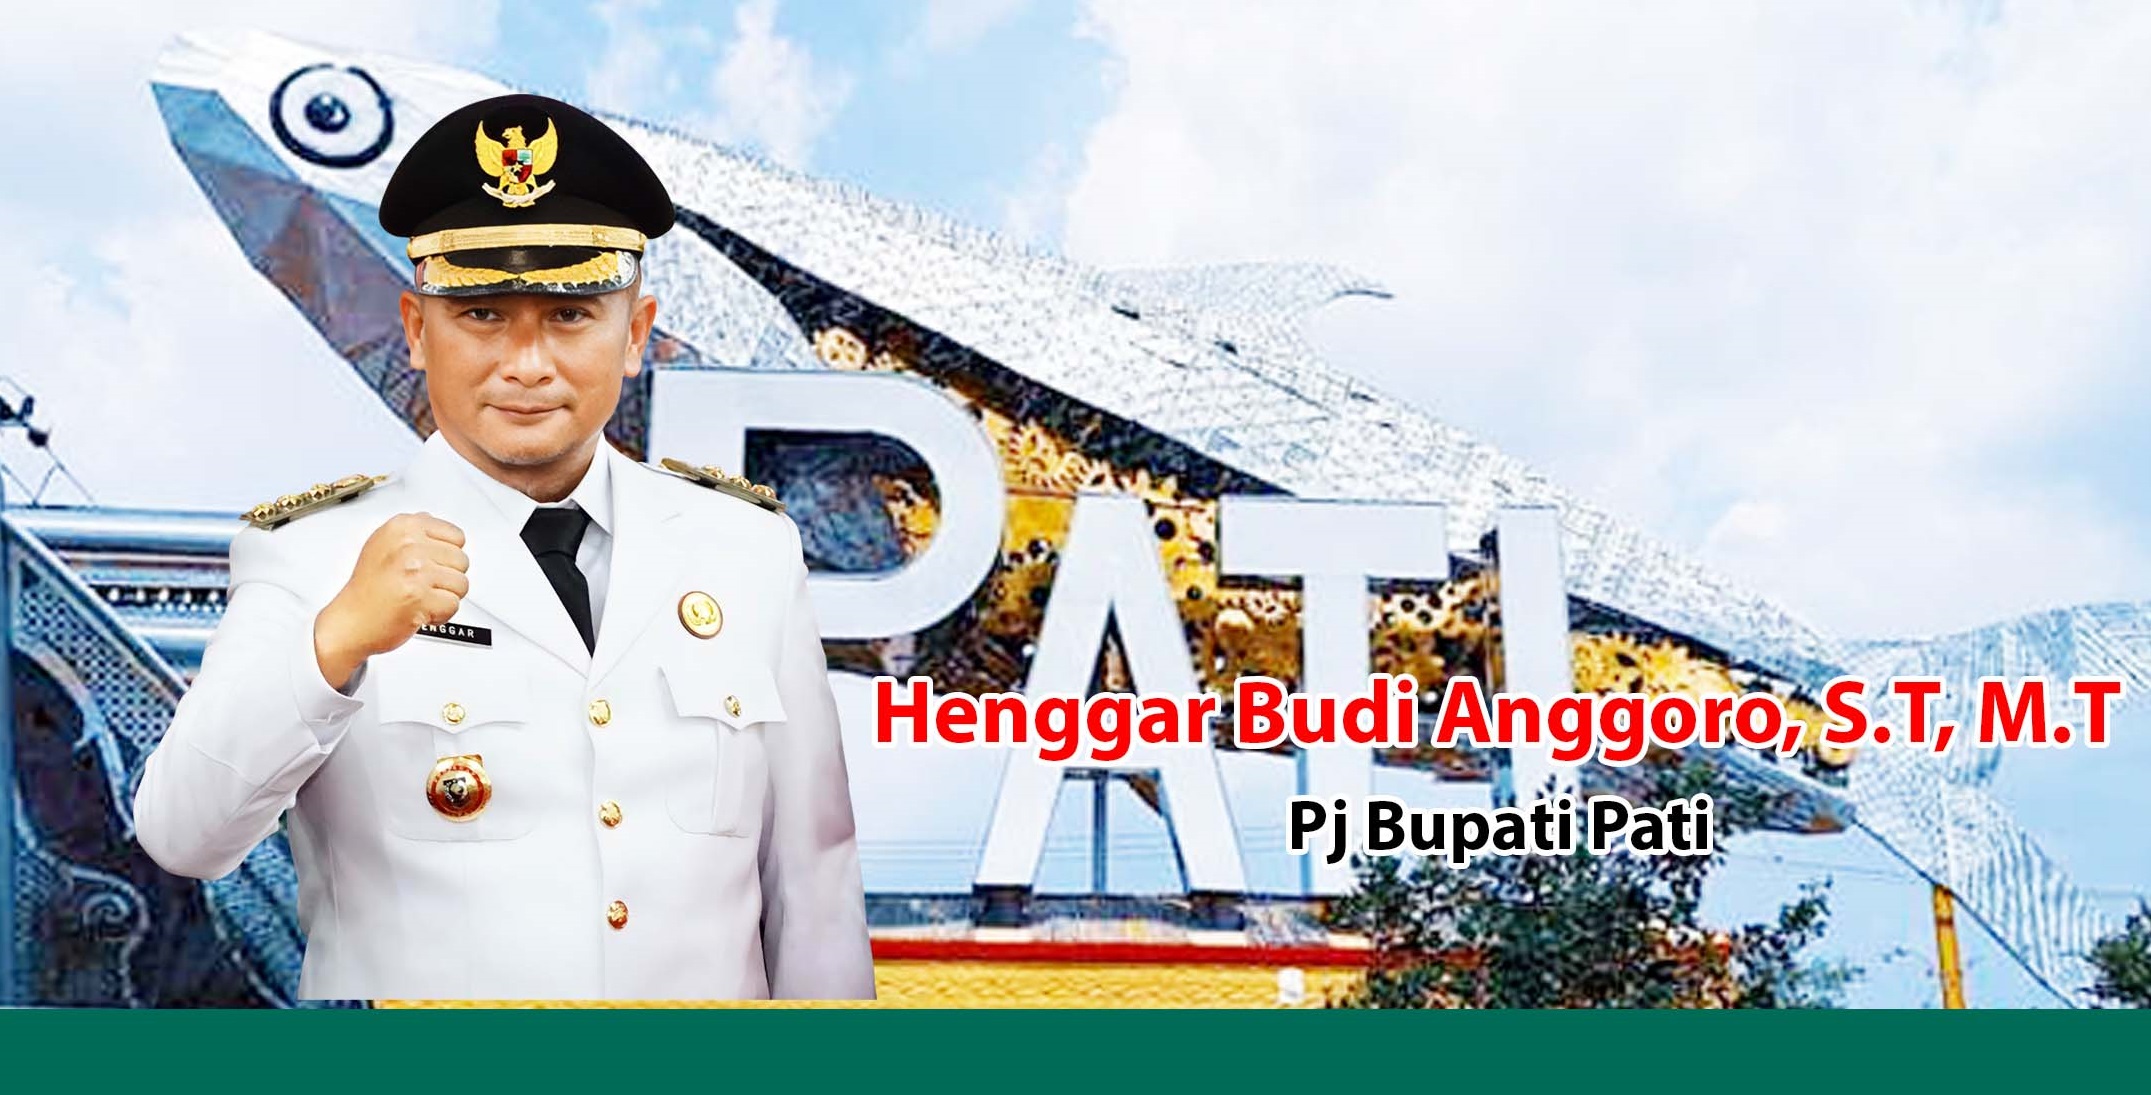 #PJ BUPATI PATI HENGGAR BUDI ANGGORO ST MT